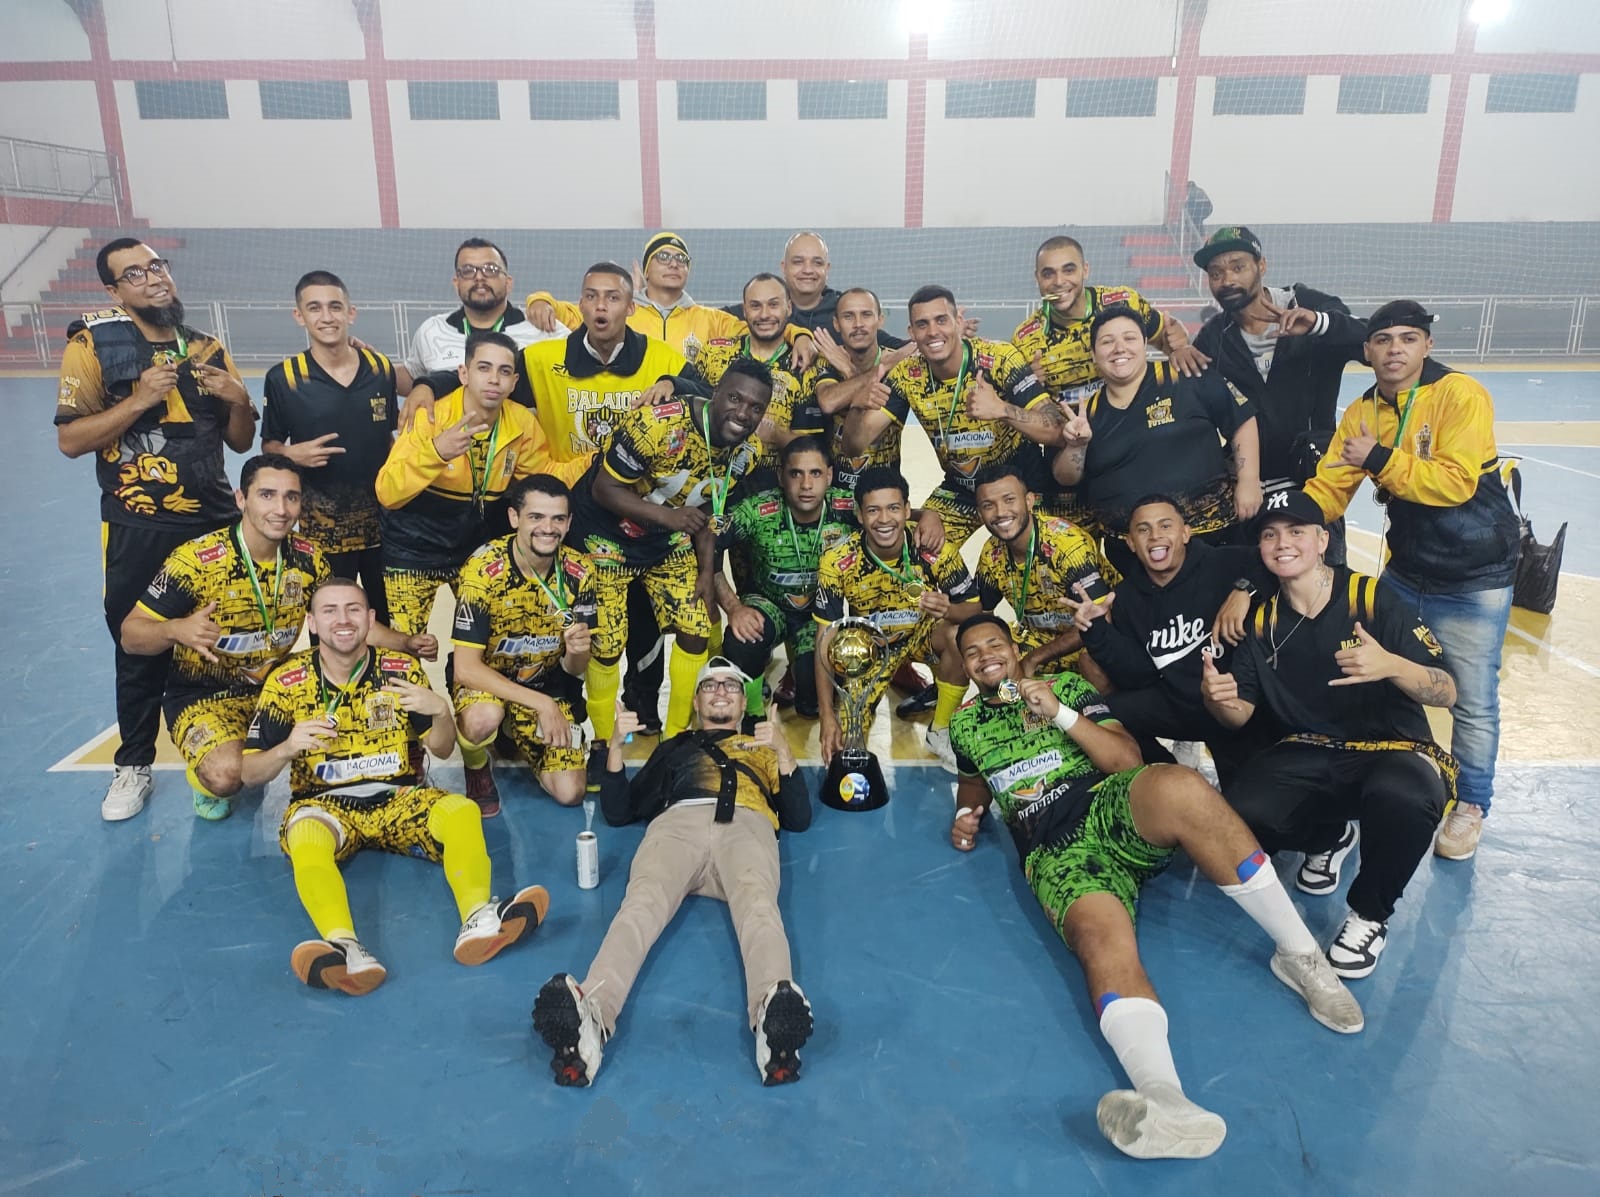 Gerência de Esportes realizou com sucesso o 1º Torneio de Pênaltis de Futsal